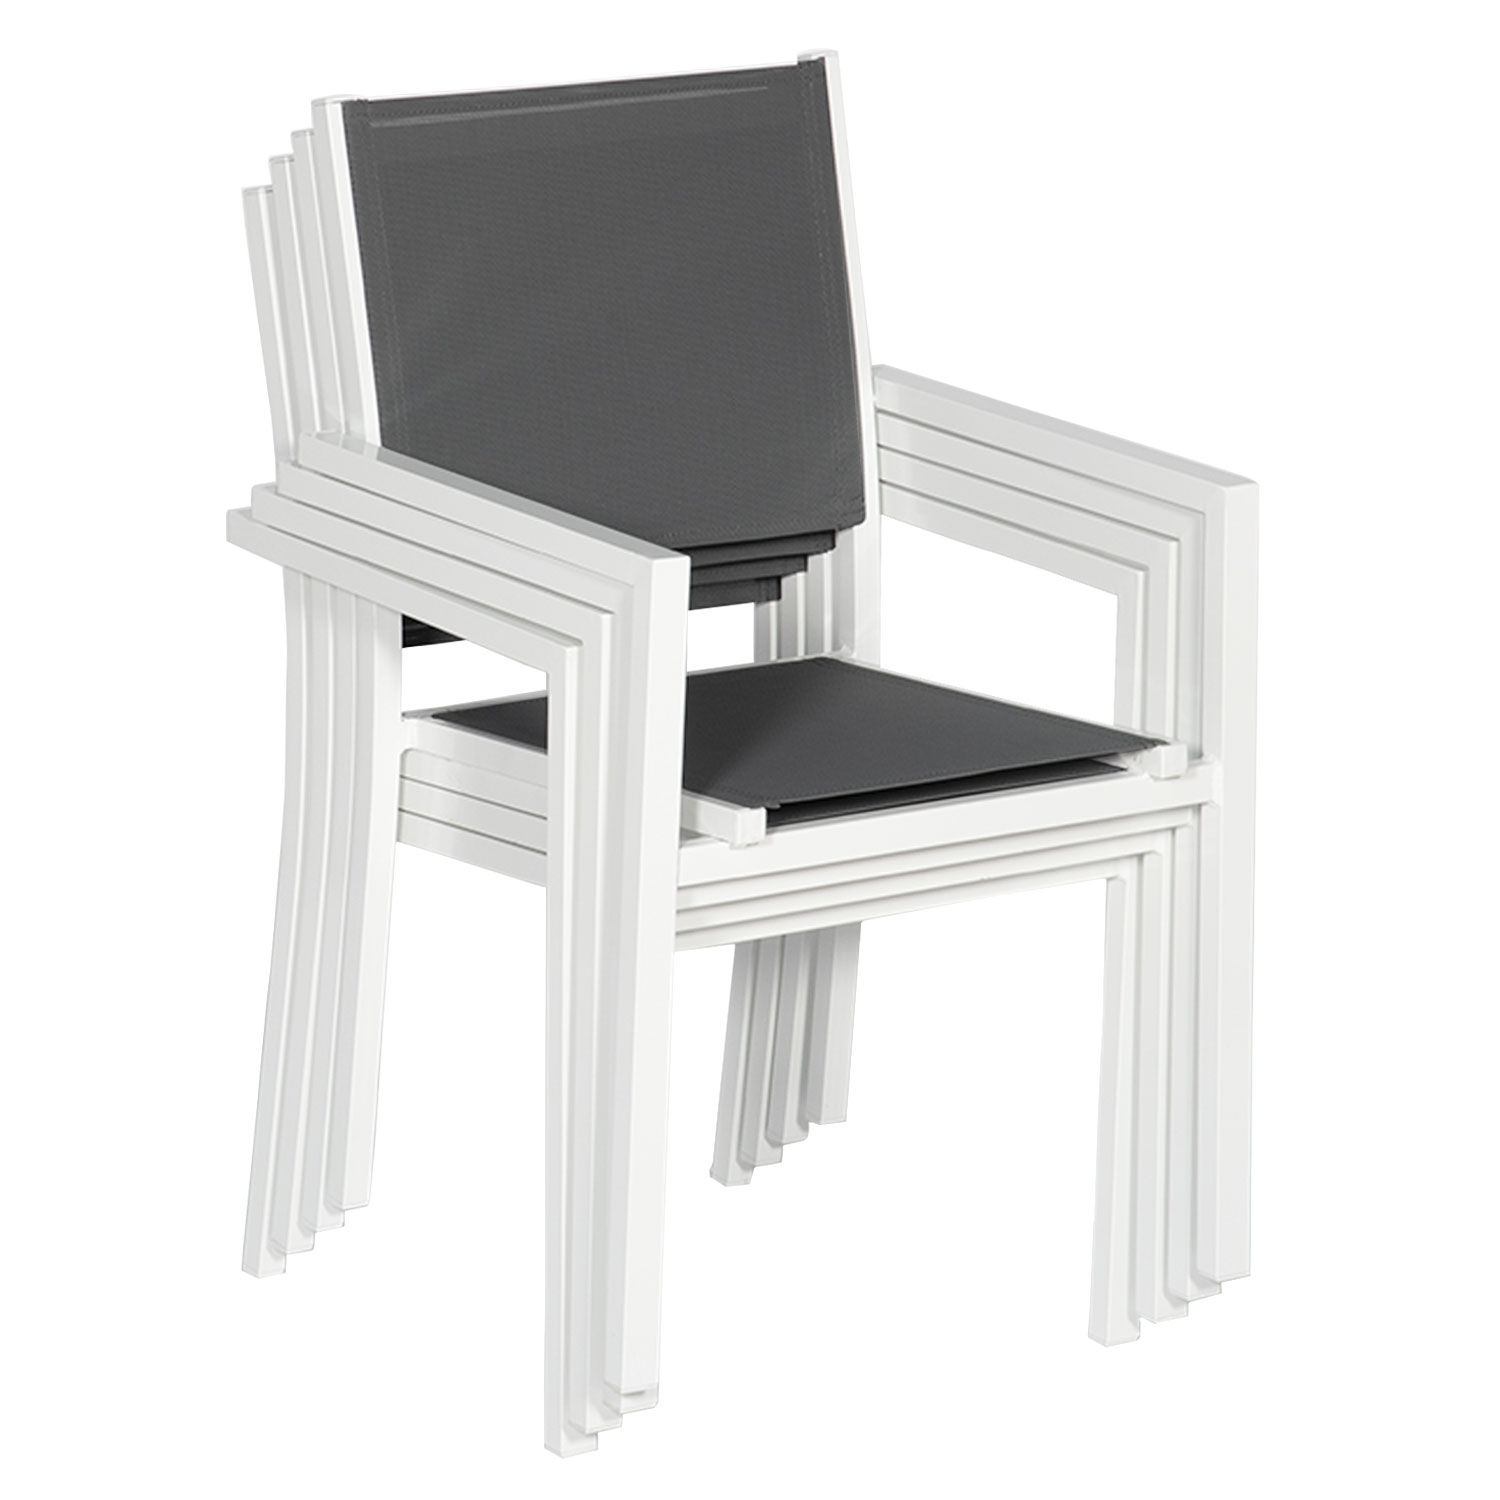 Juego de 8 sillas de aluminio blanco - textilene gris